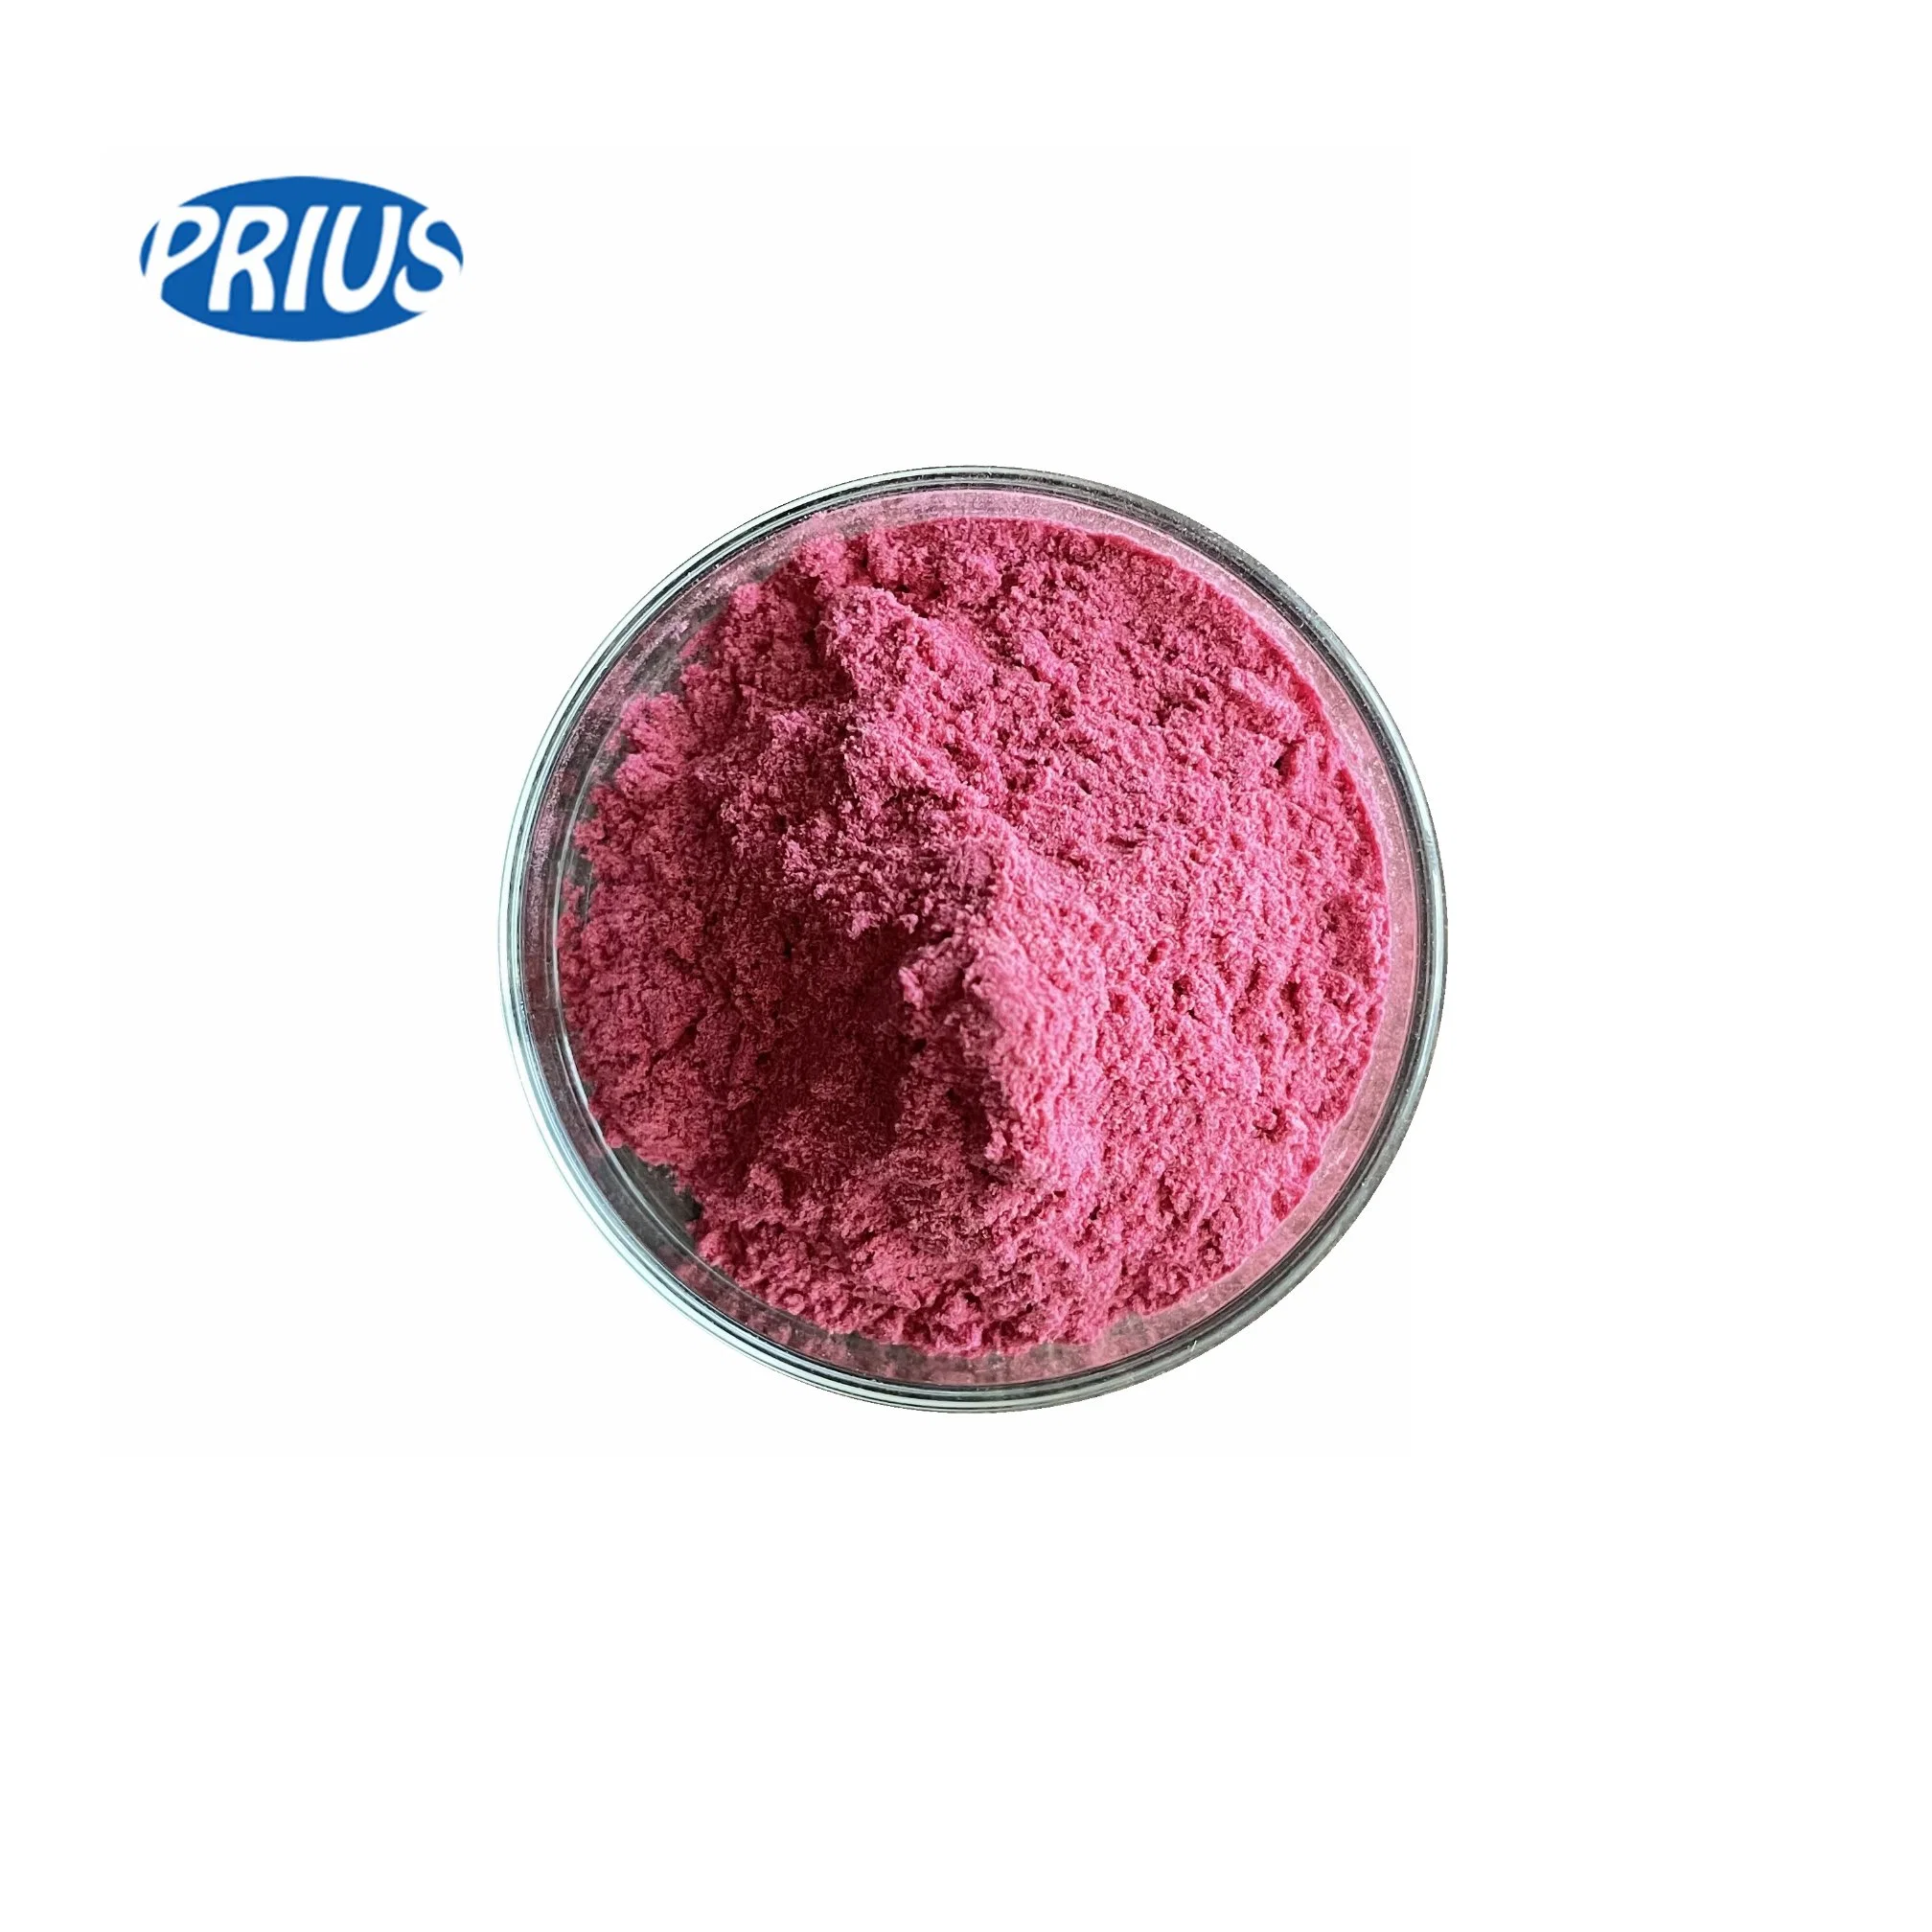 Заморозить сушеные розовый дракон фруктовый порошок основную часть розового цвета Порошок Pitaya